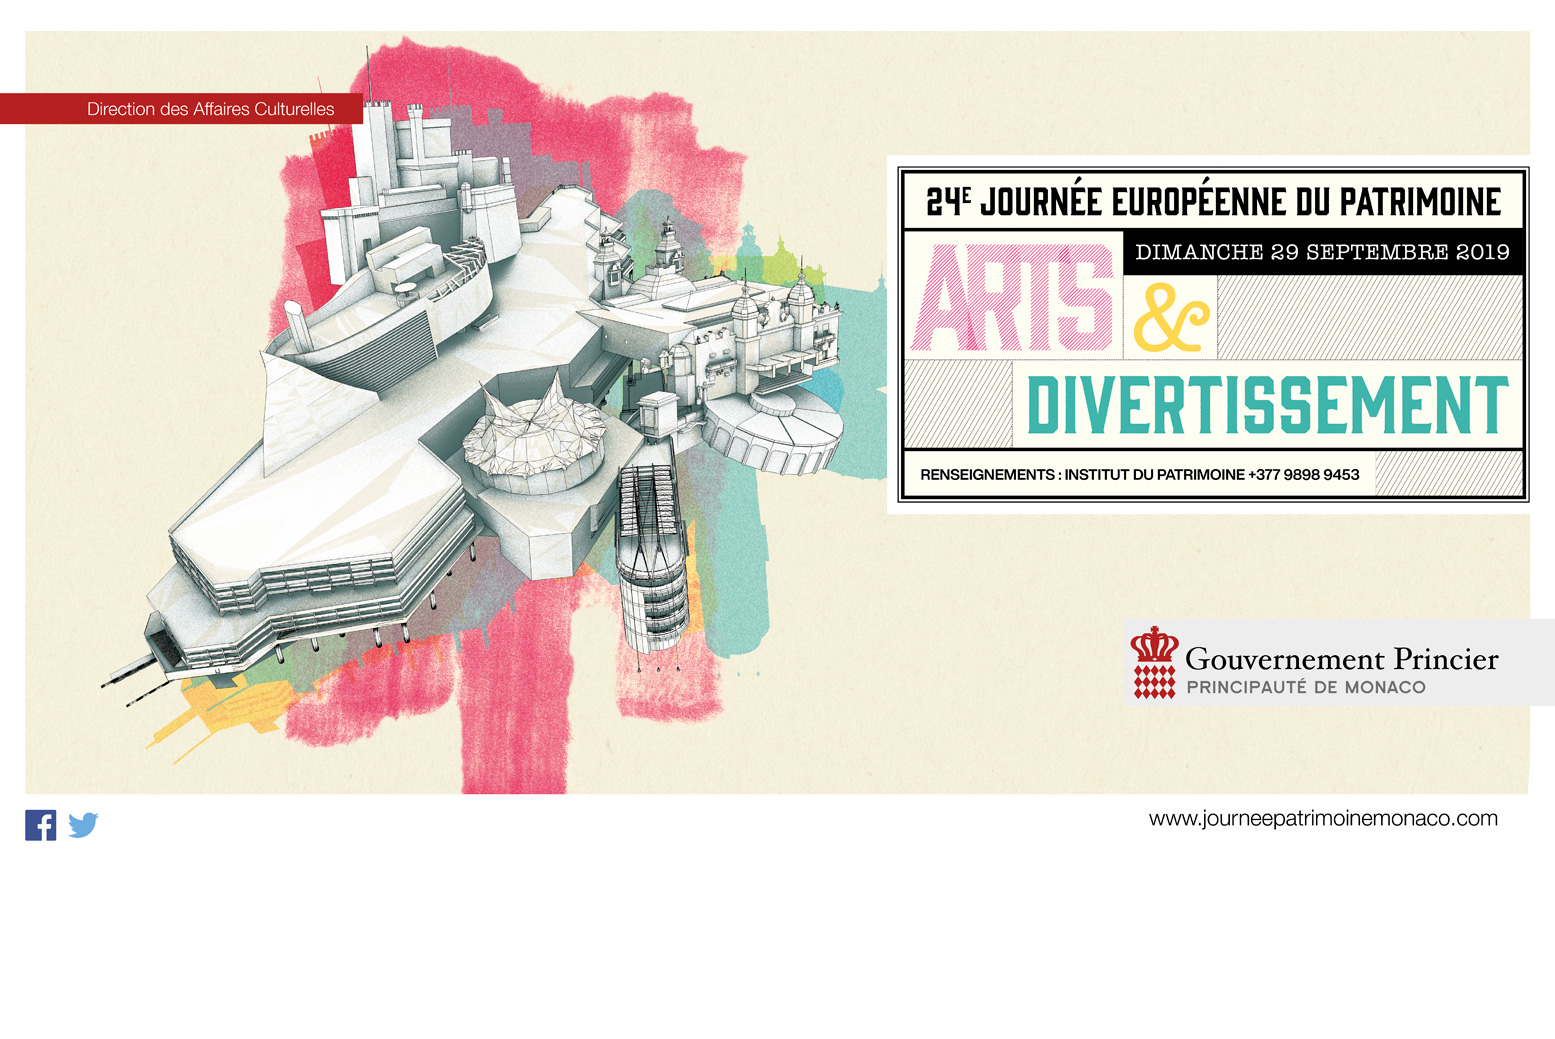 The Francis Bacon MB Art Foundation renews its participation in the “Journée Européenne du Patrimoine” in Monaco